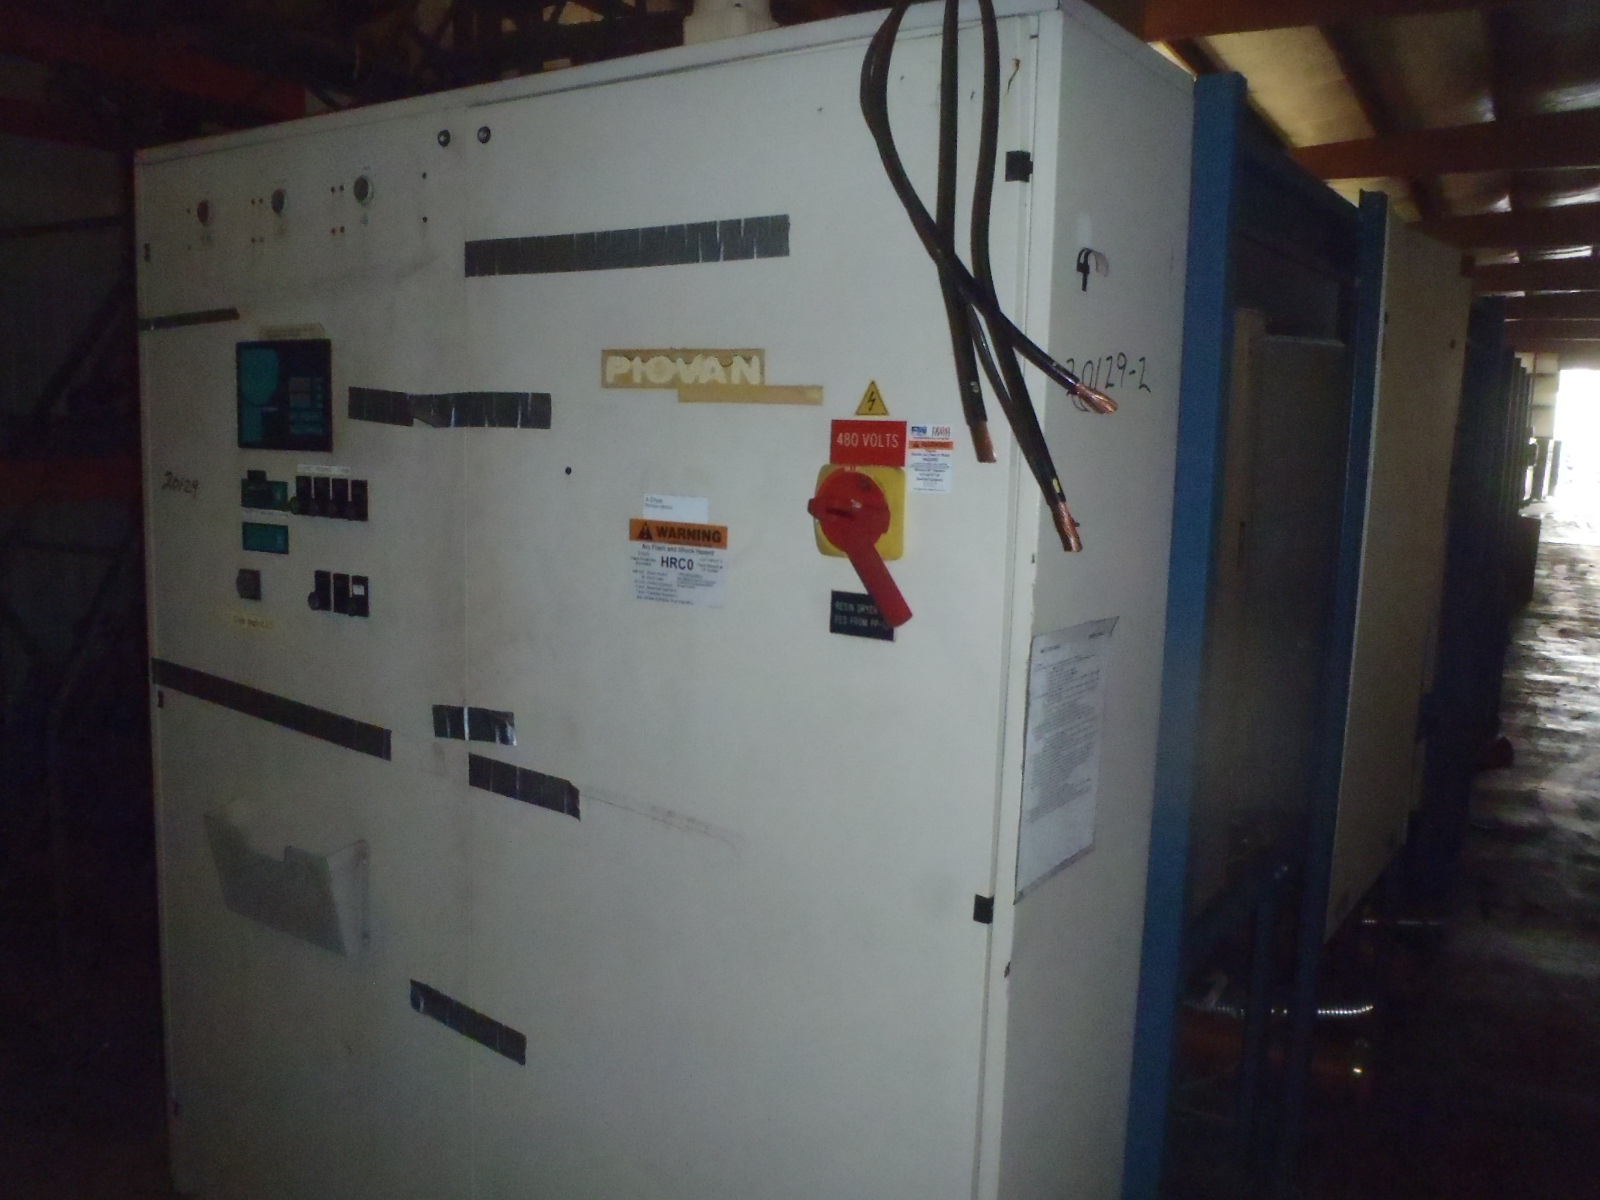 6000 Lb. Piovan Model PS7000 DS531 Desiccant Dryer